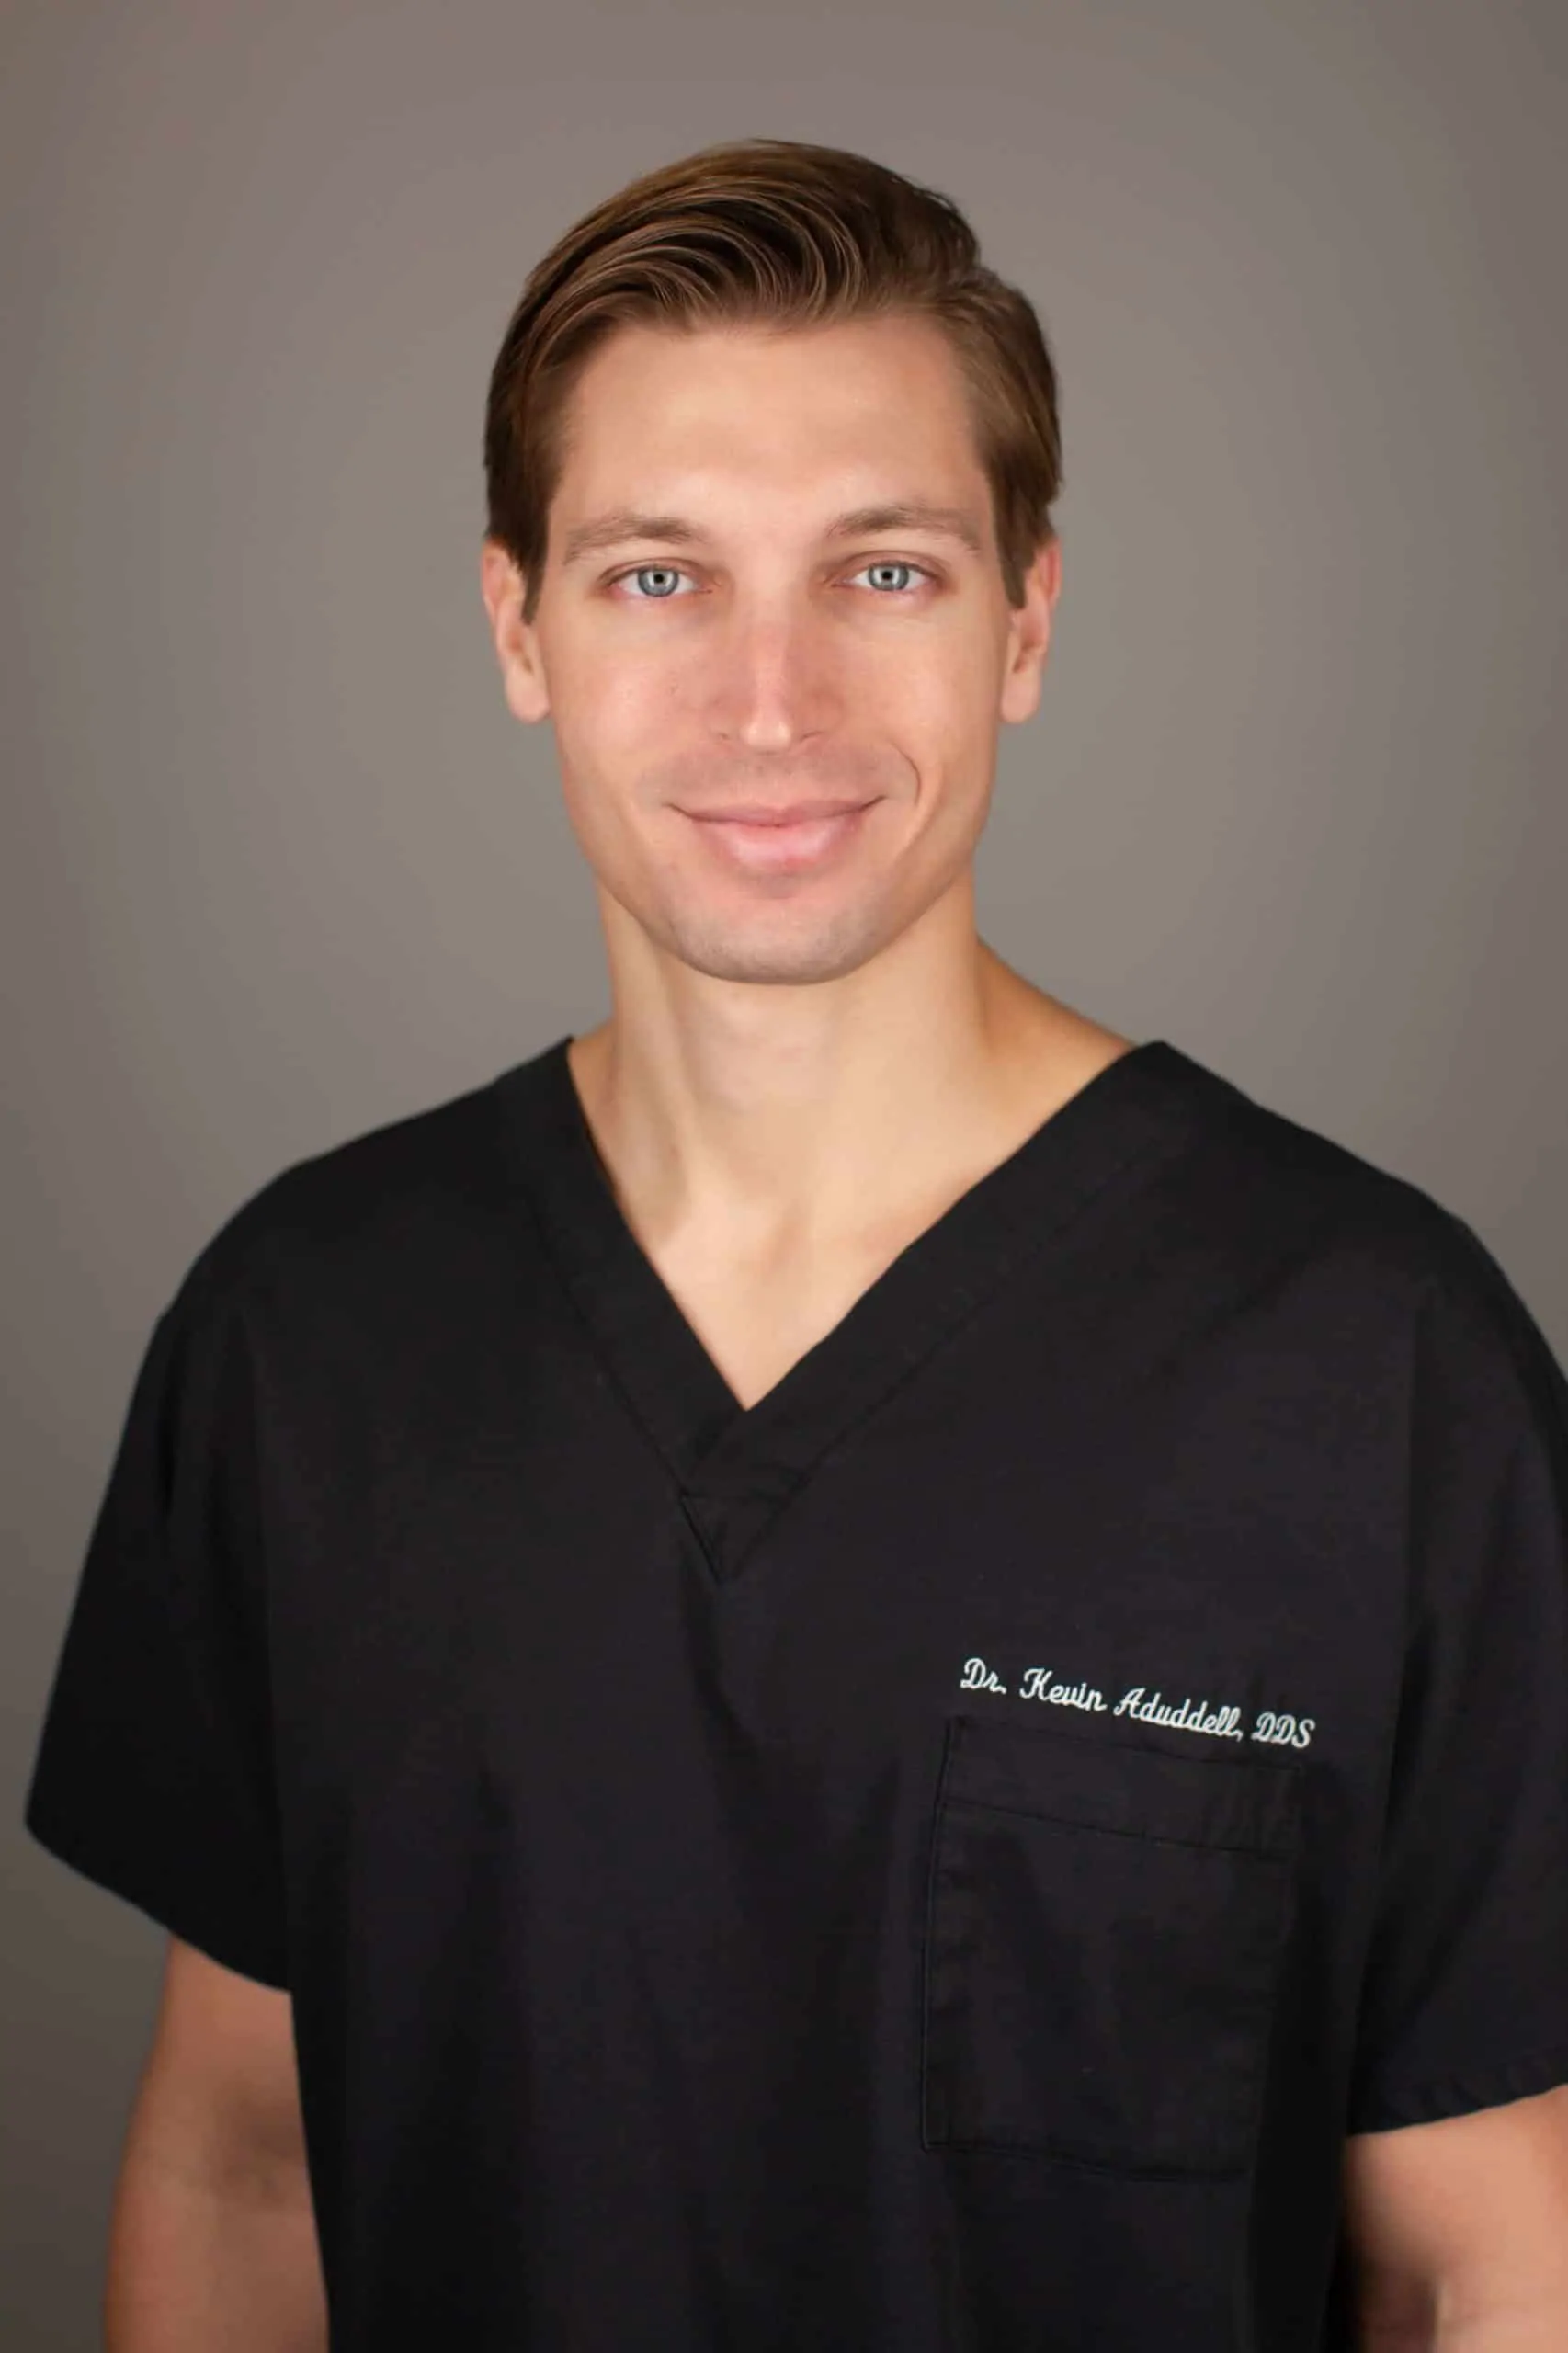 Dr. Kevin Aduddell at Aduddell Dentistry